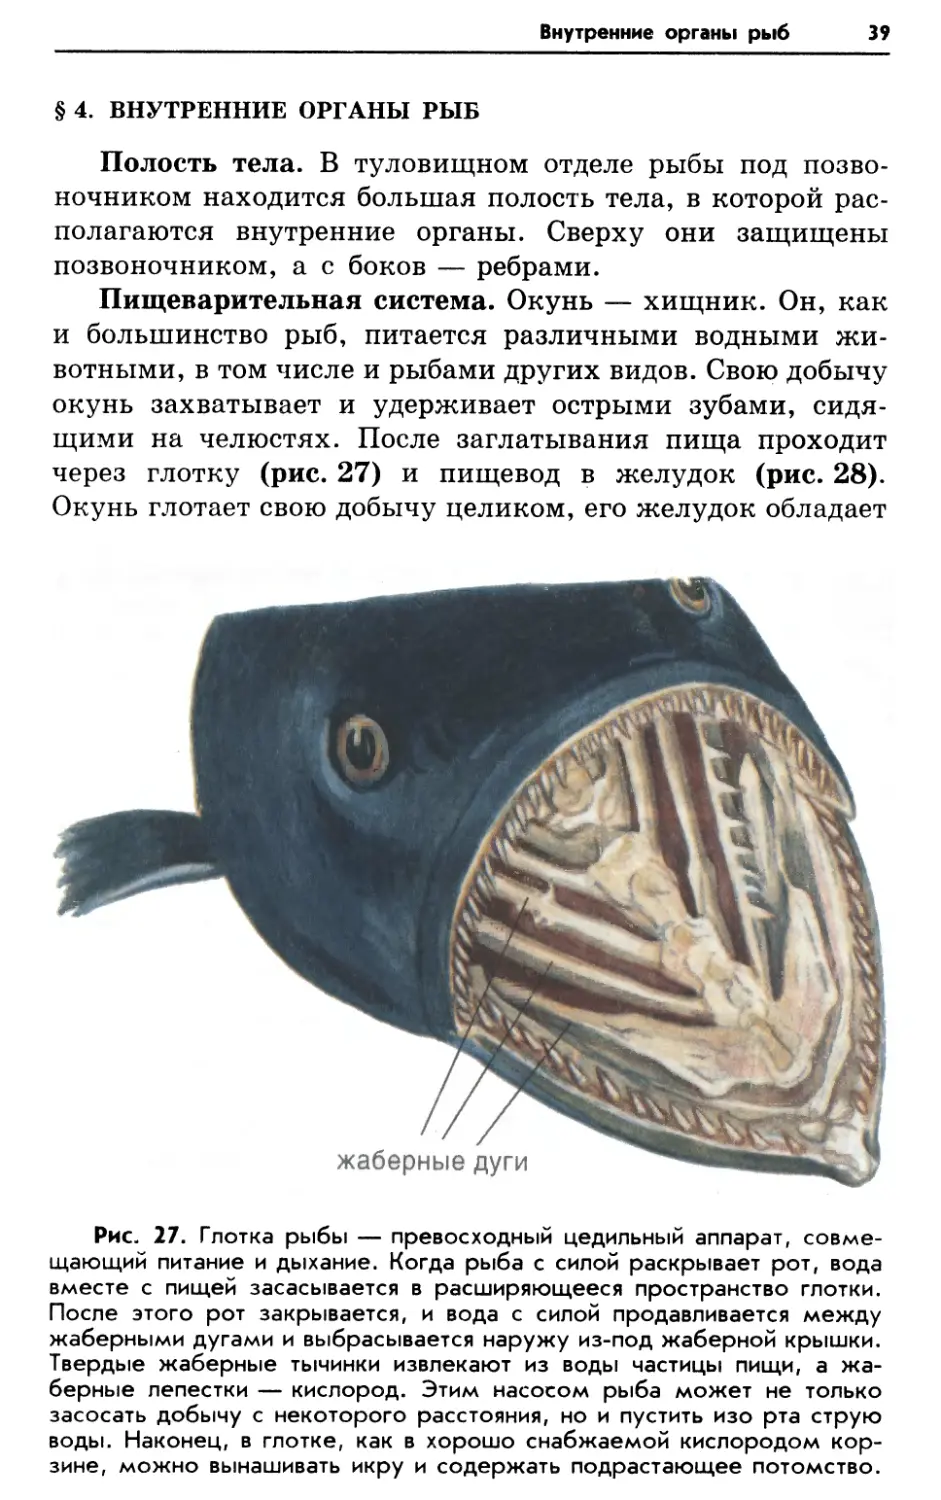 § 4. Внутренние органы рыб